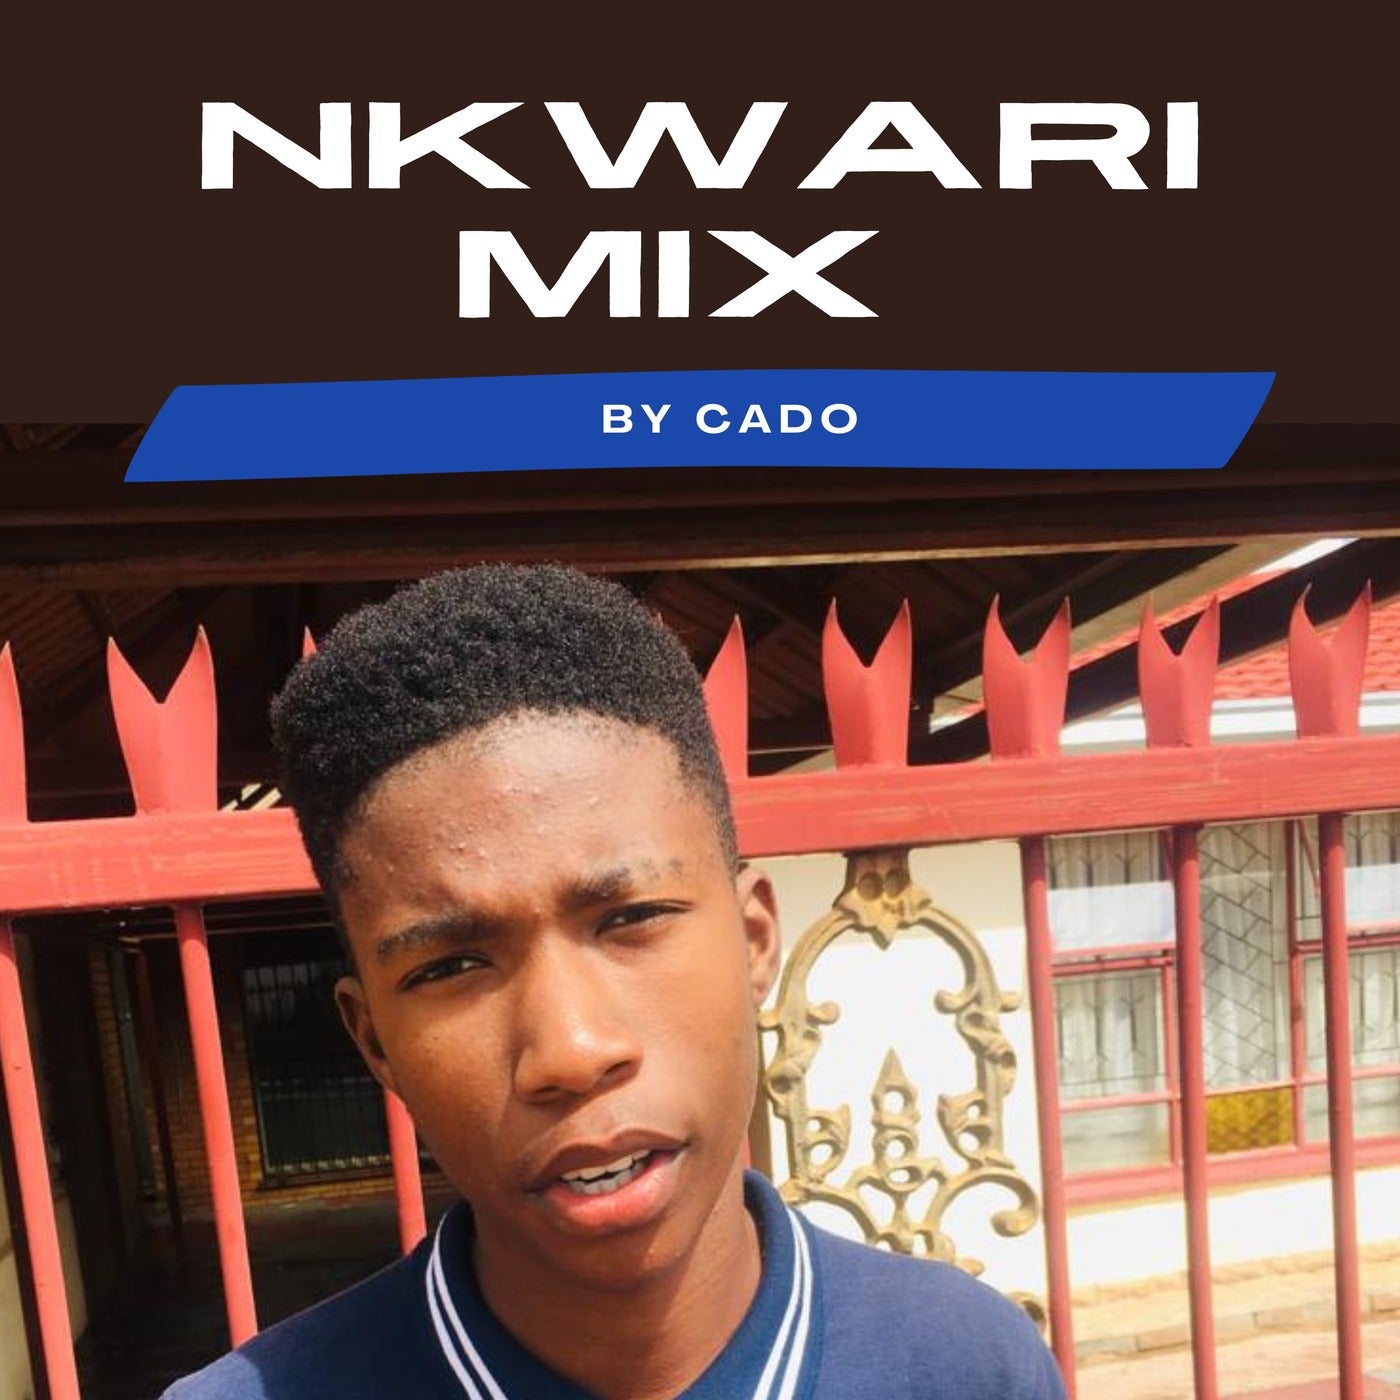 Nkwari Mix